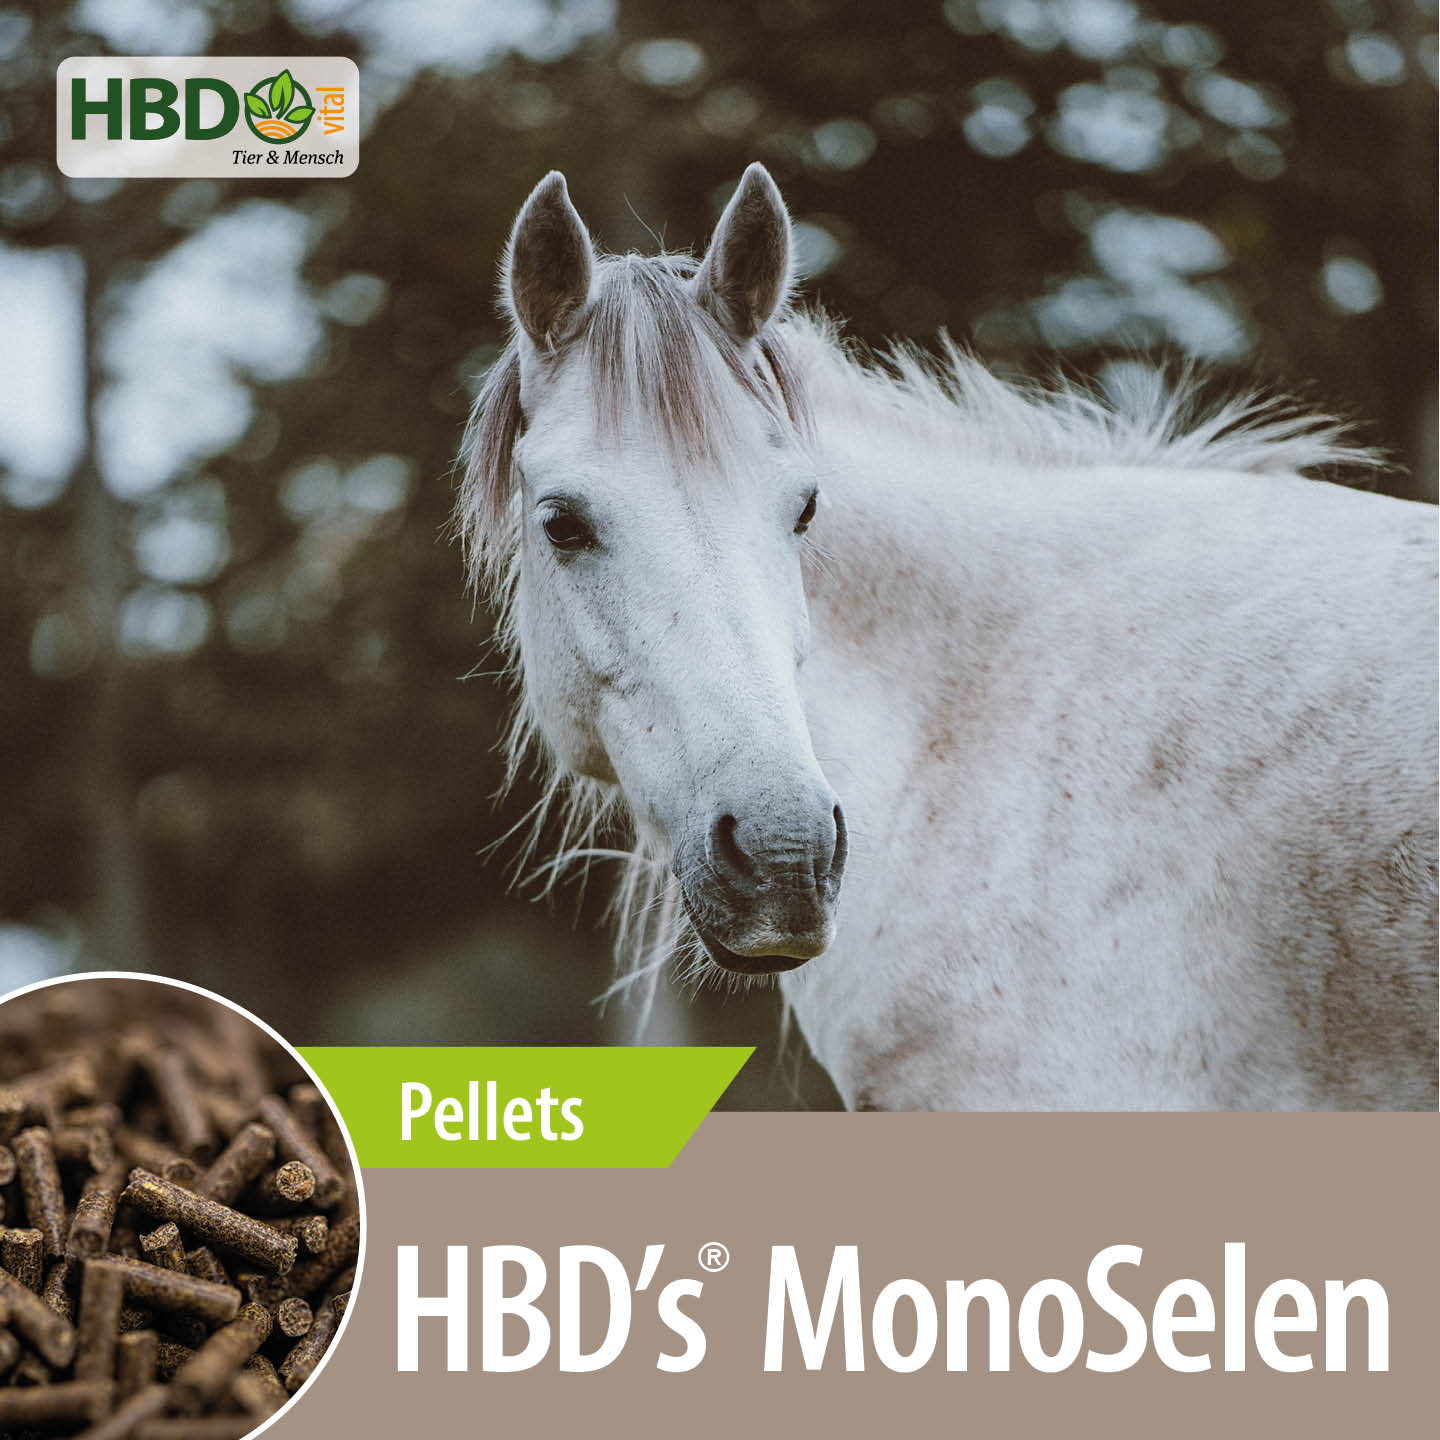 Shopbild für HBD’s MonoSelen - Das Bild zeigt den Produktnamen sowie den Hinweis, dass es sich um Pellets handelt. Ein weißes Pferd ist zu sehen.